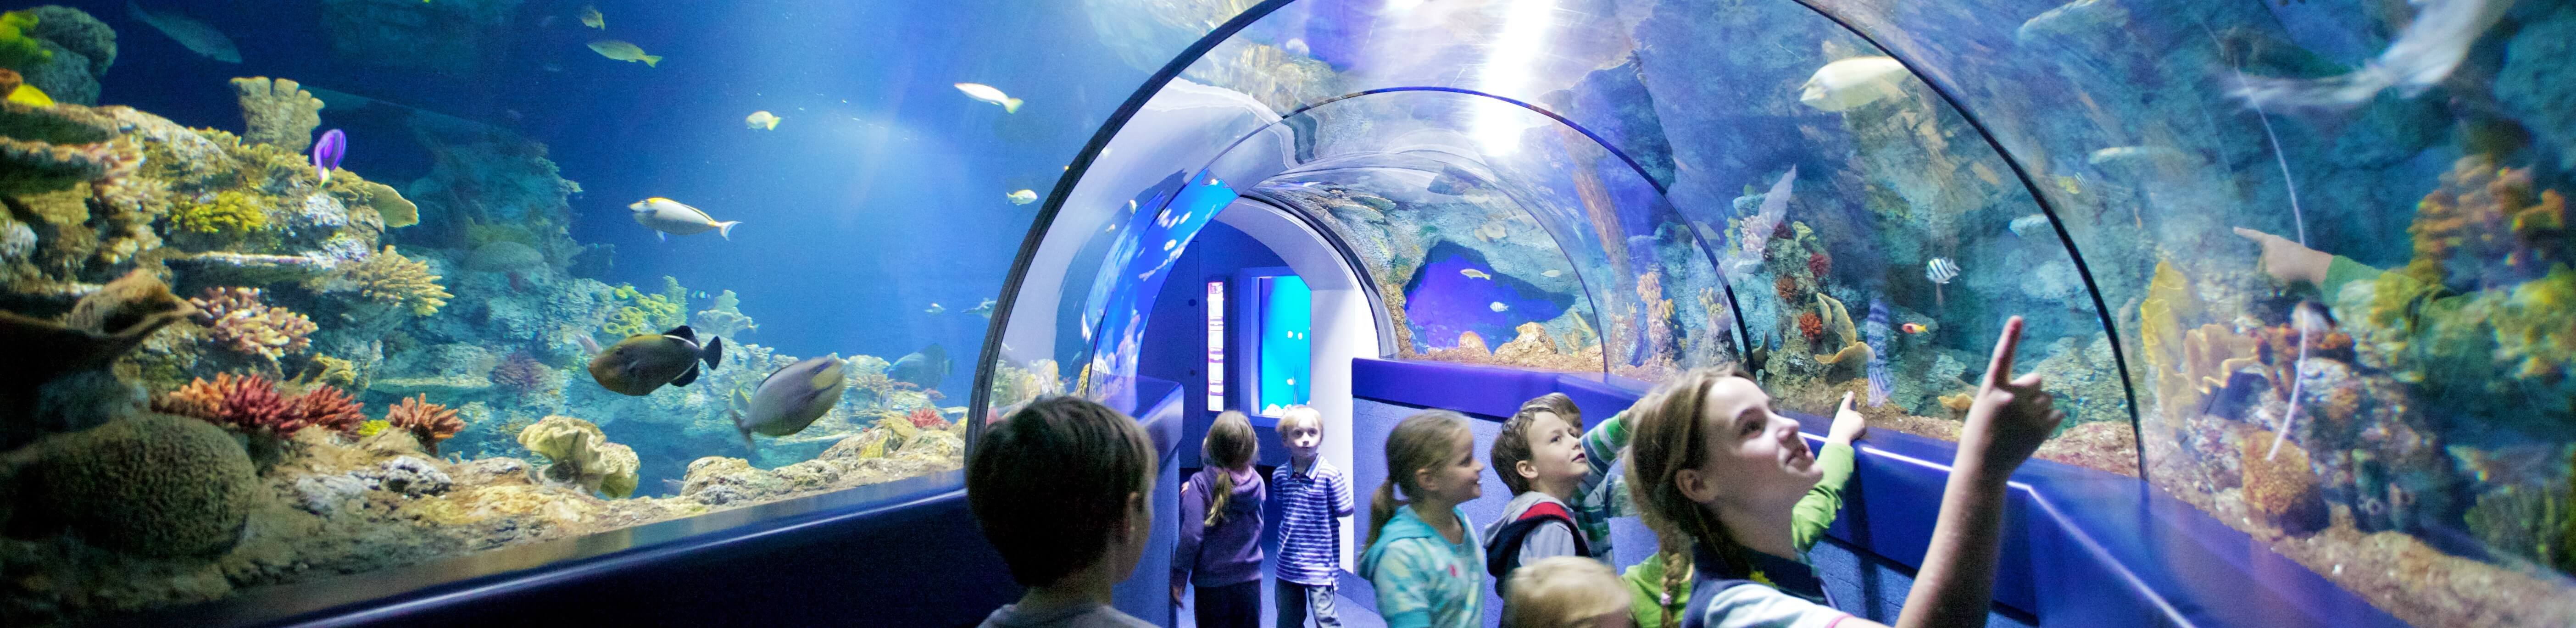 Underwater Tunnel Bristol Aquarium